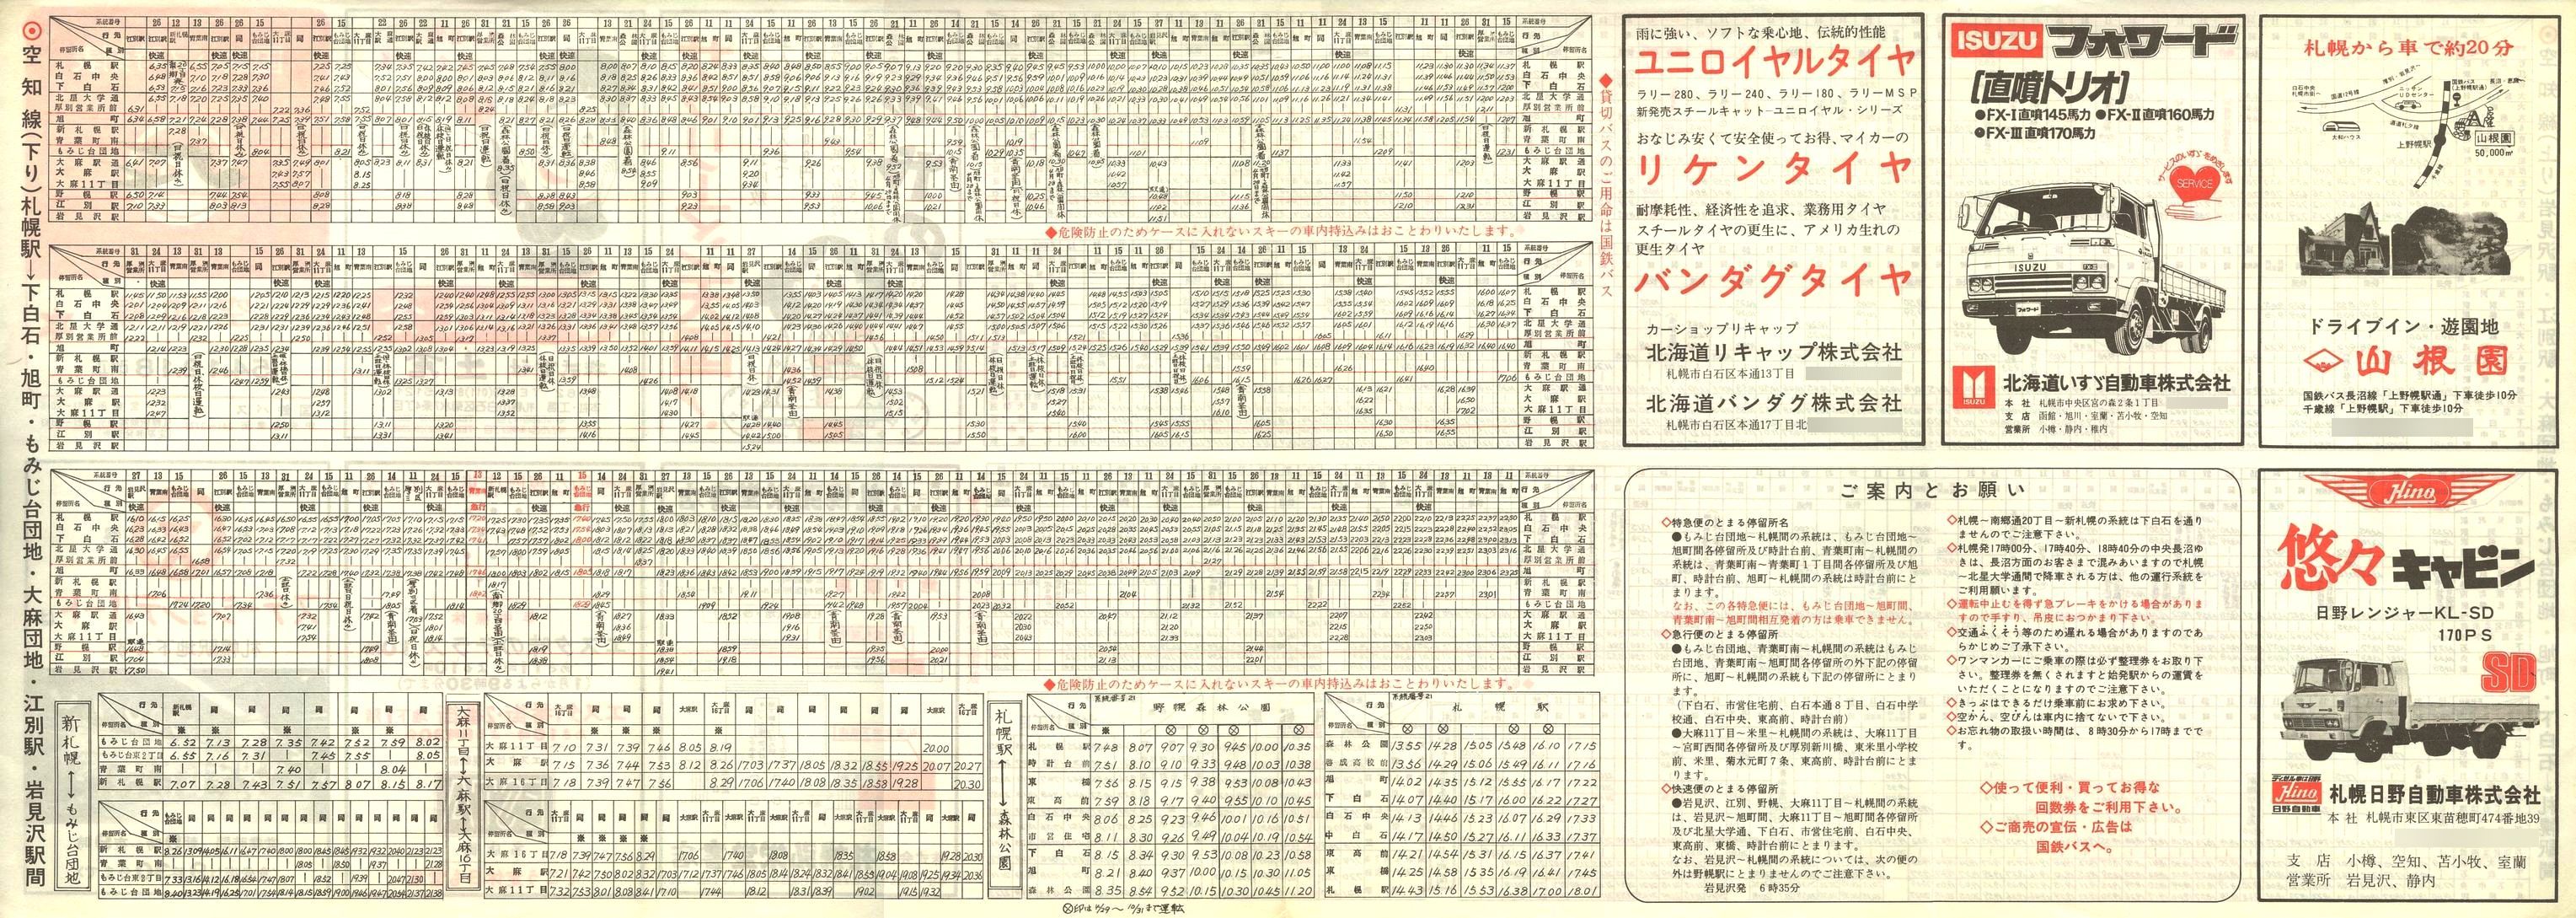 1979-12-18改正_国鉄バス_空知線時刻表裏面